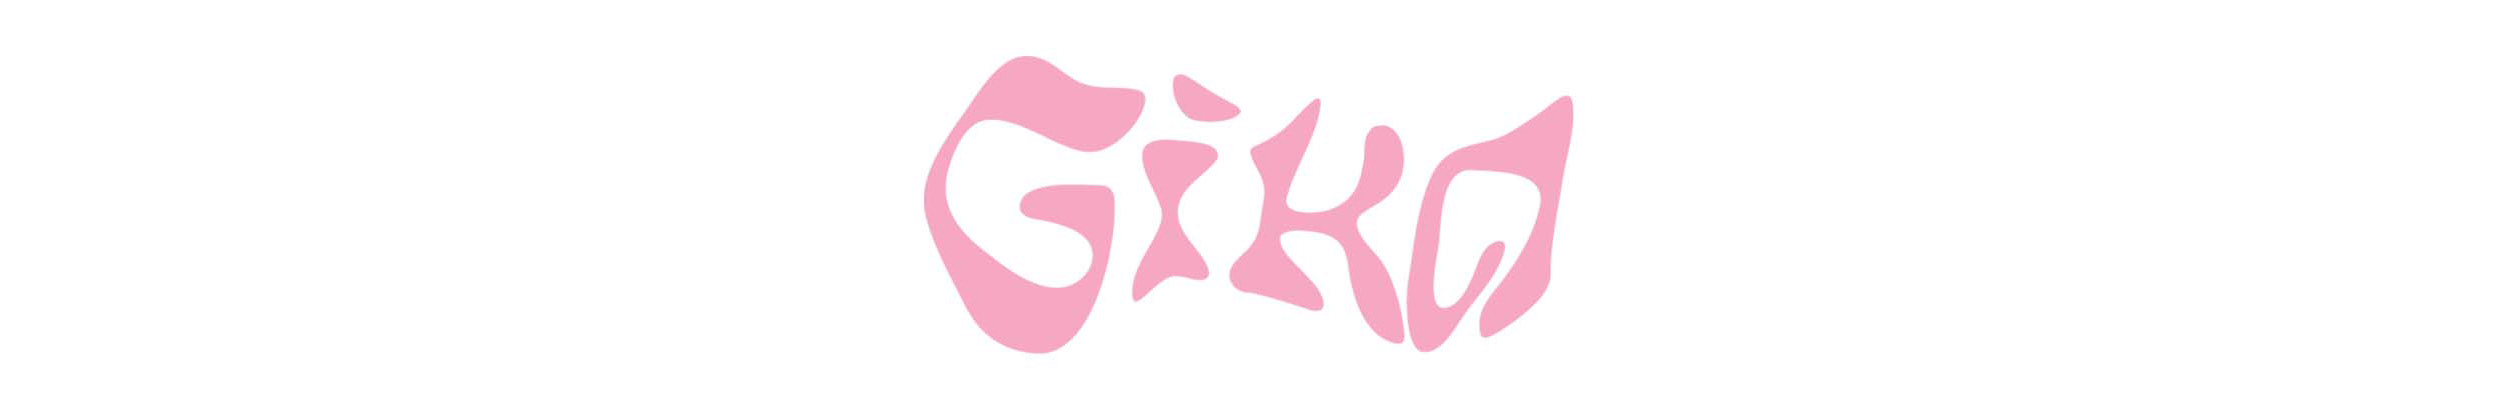 Gika Leão's profile banner